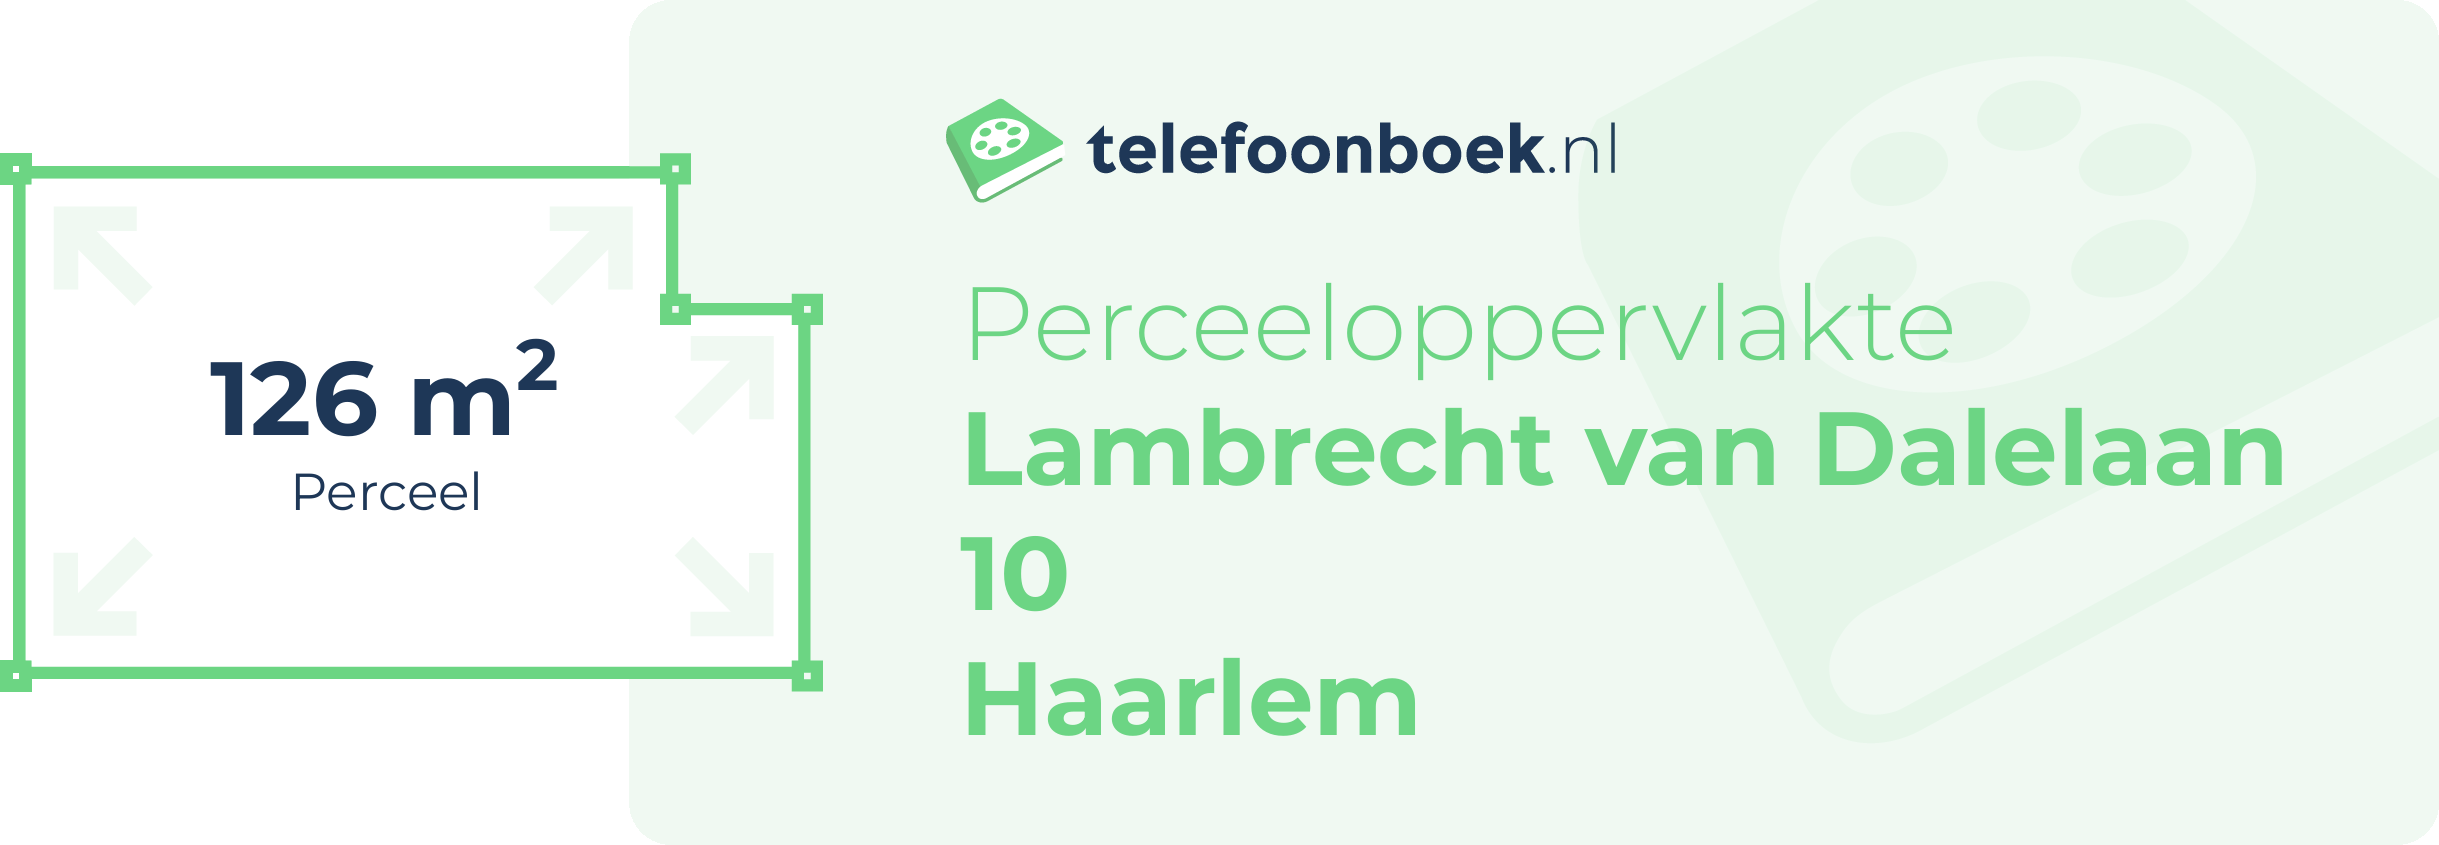 Perceeloppervlakte Lambrecht Van Dalelaan 10 Haarlem